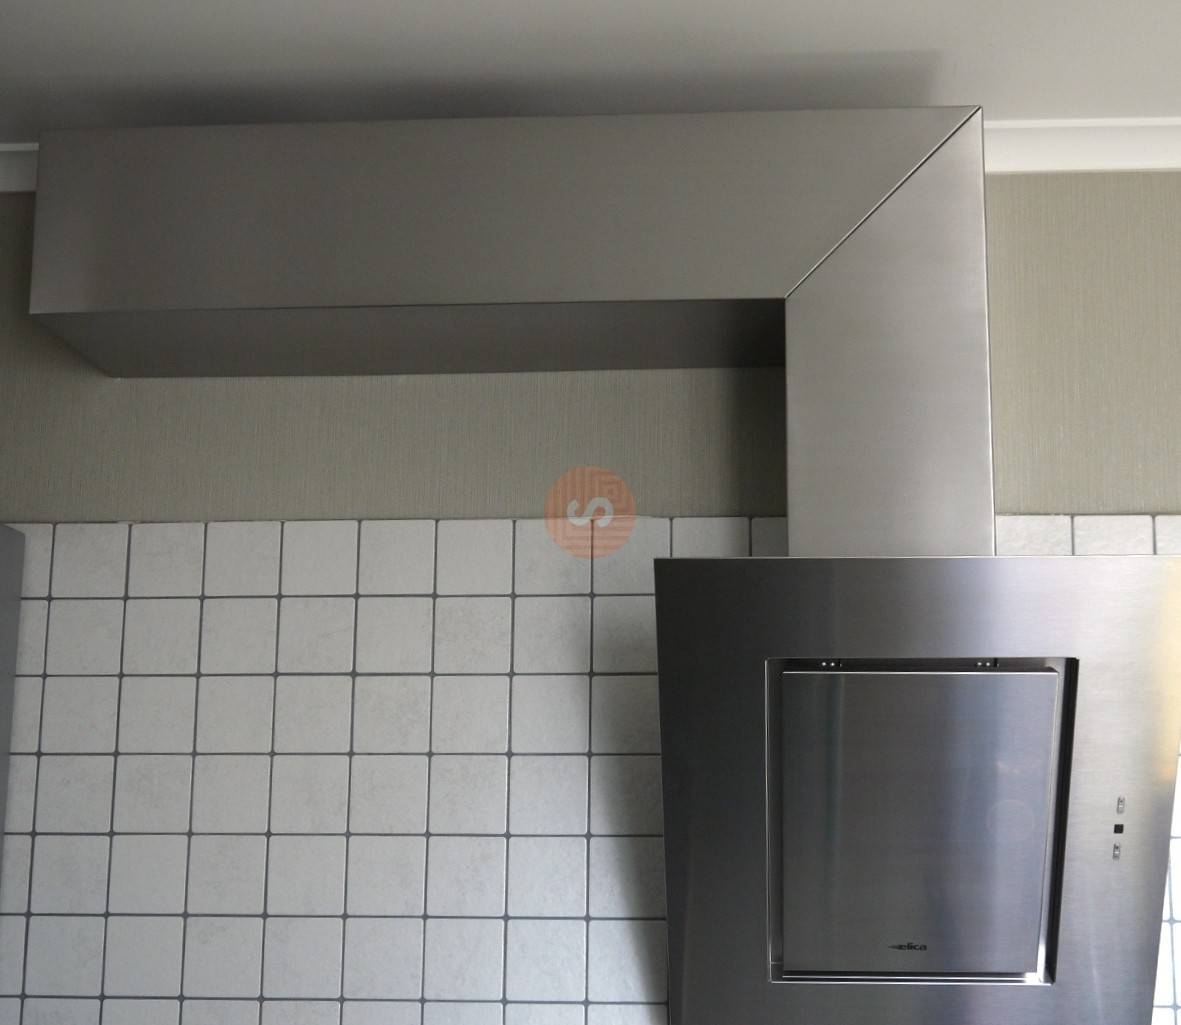 Как спрятать вентиляционную трубу (гофру) от вытяжки на кухне под натяжной потолок или гипсокартон